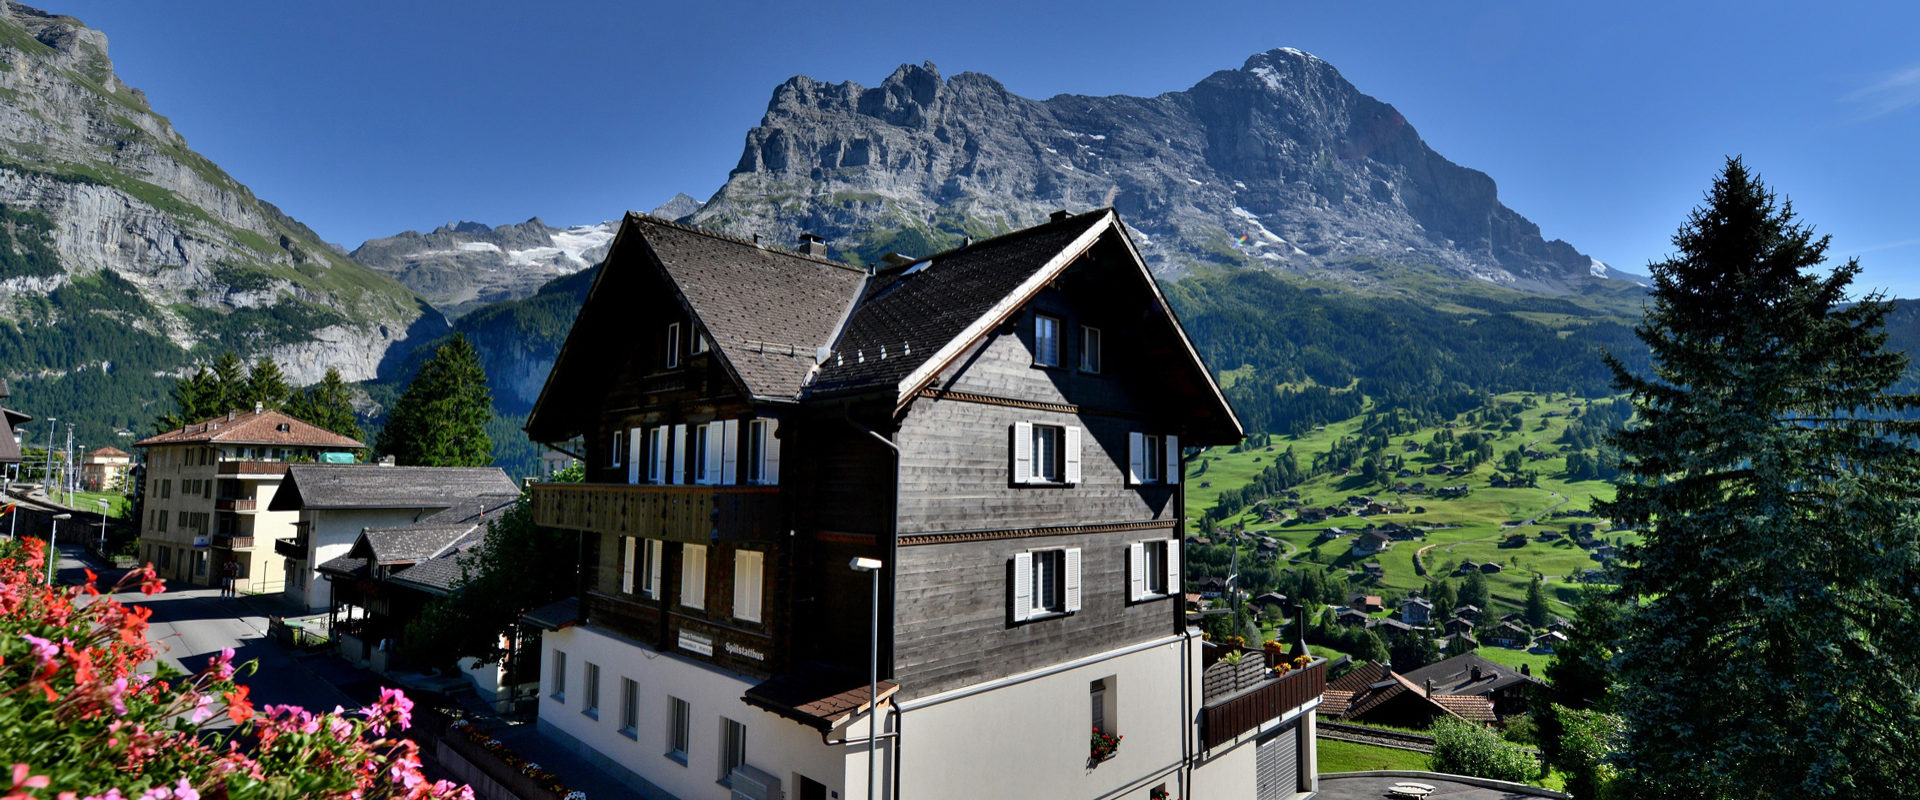 Spillstatthus Grindelwald